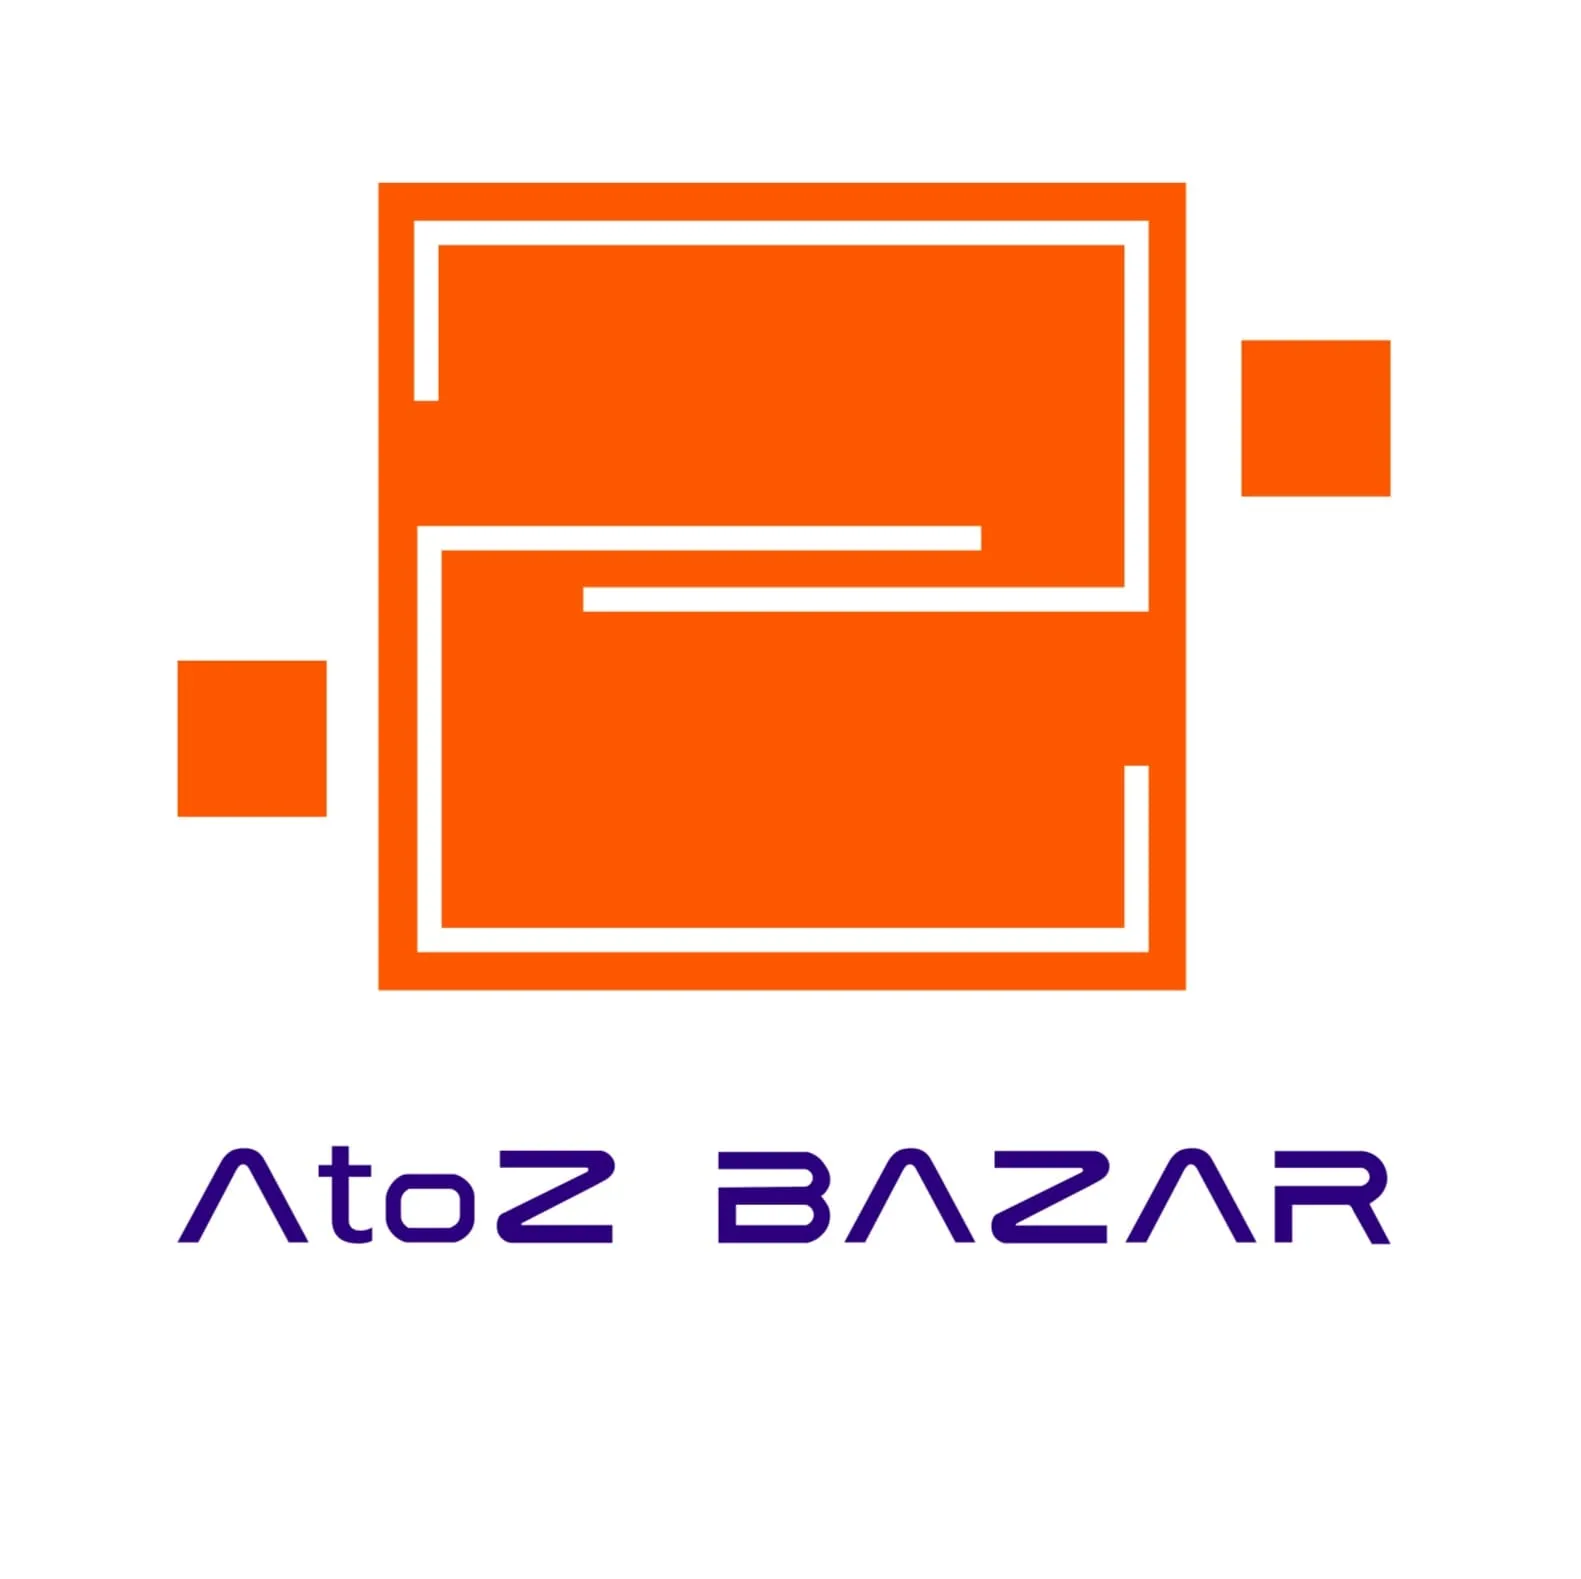 A to Z Bazar